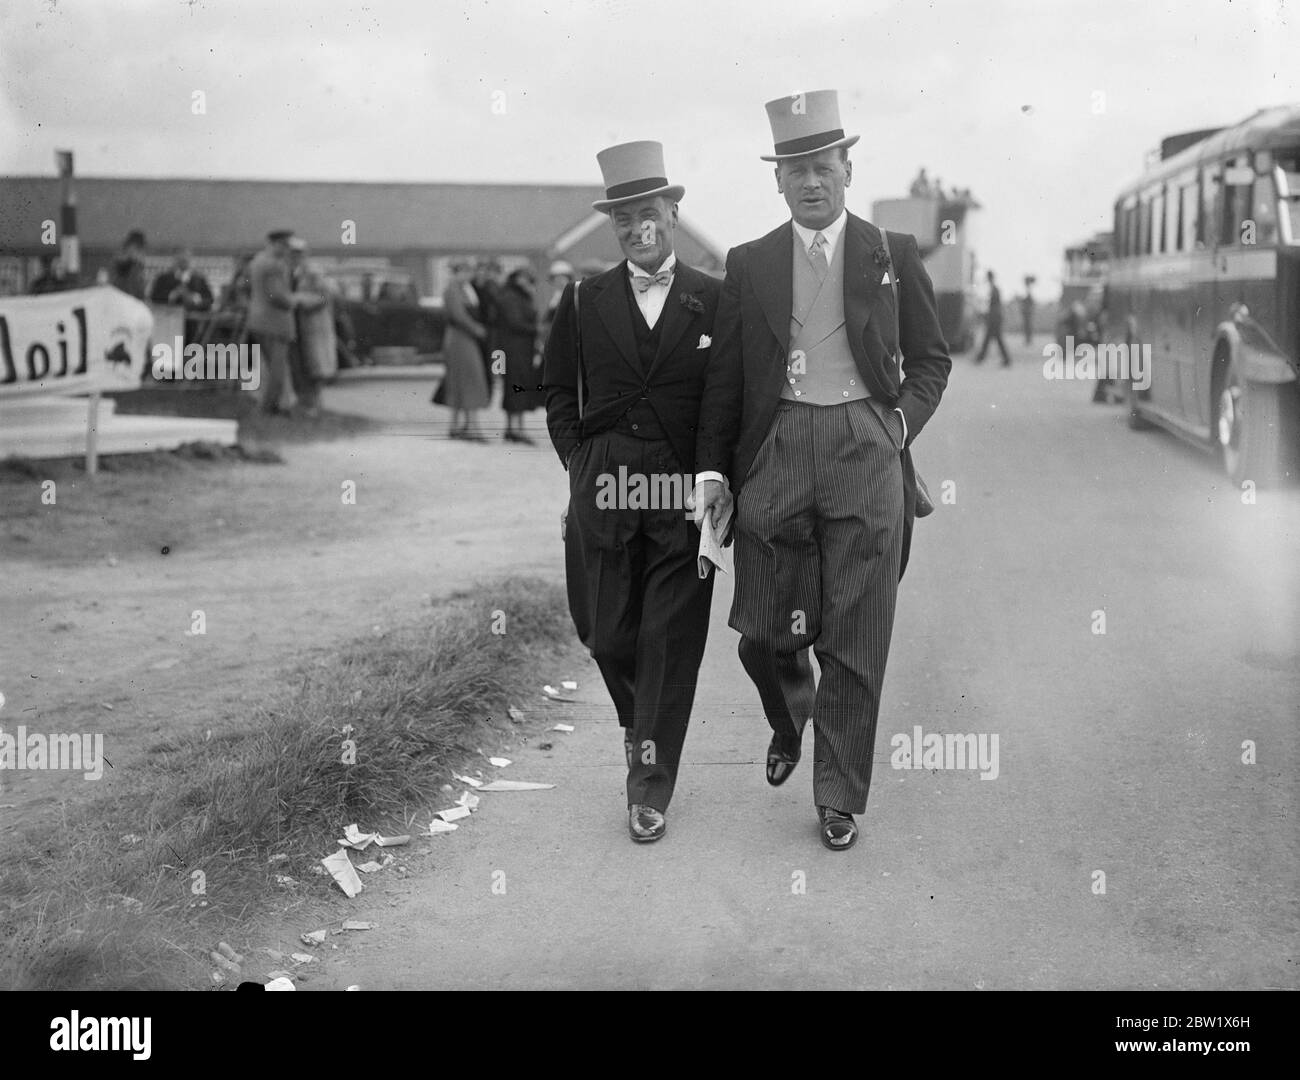 Sir Malcolm Campbell im Derby. Sir Malcolm Campbell (links), der schnellste Mann auf Rädern, ging mit einem Freund auf dem Kurs in Epsom, wo er die schnellsten Pferde um Derby Honors kämpfen sah. Juni 1937 Stockfoto